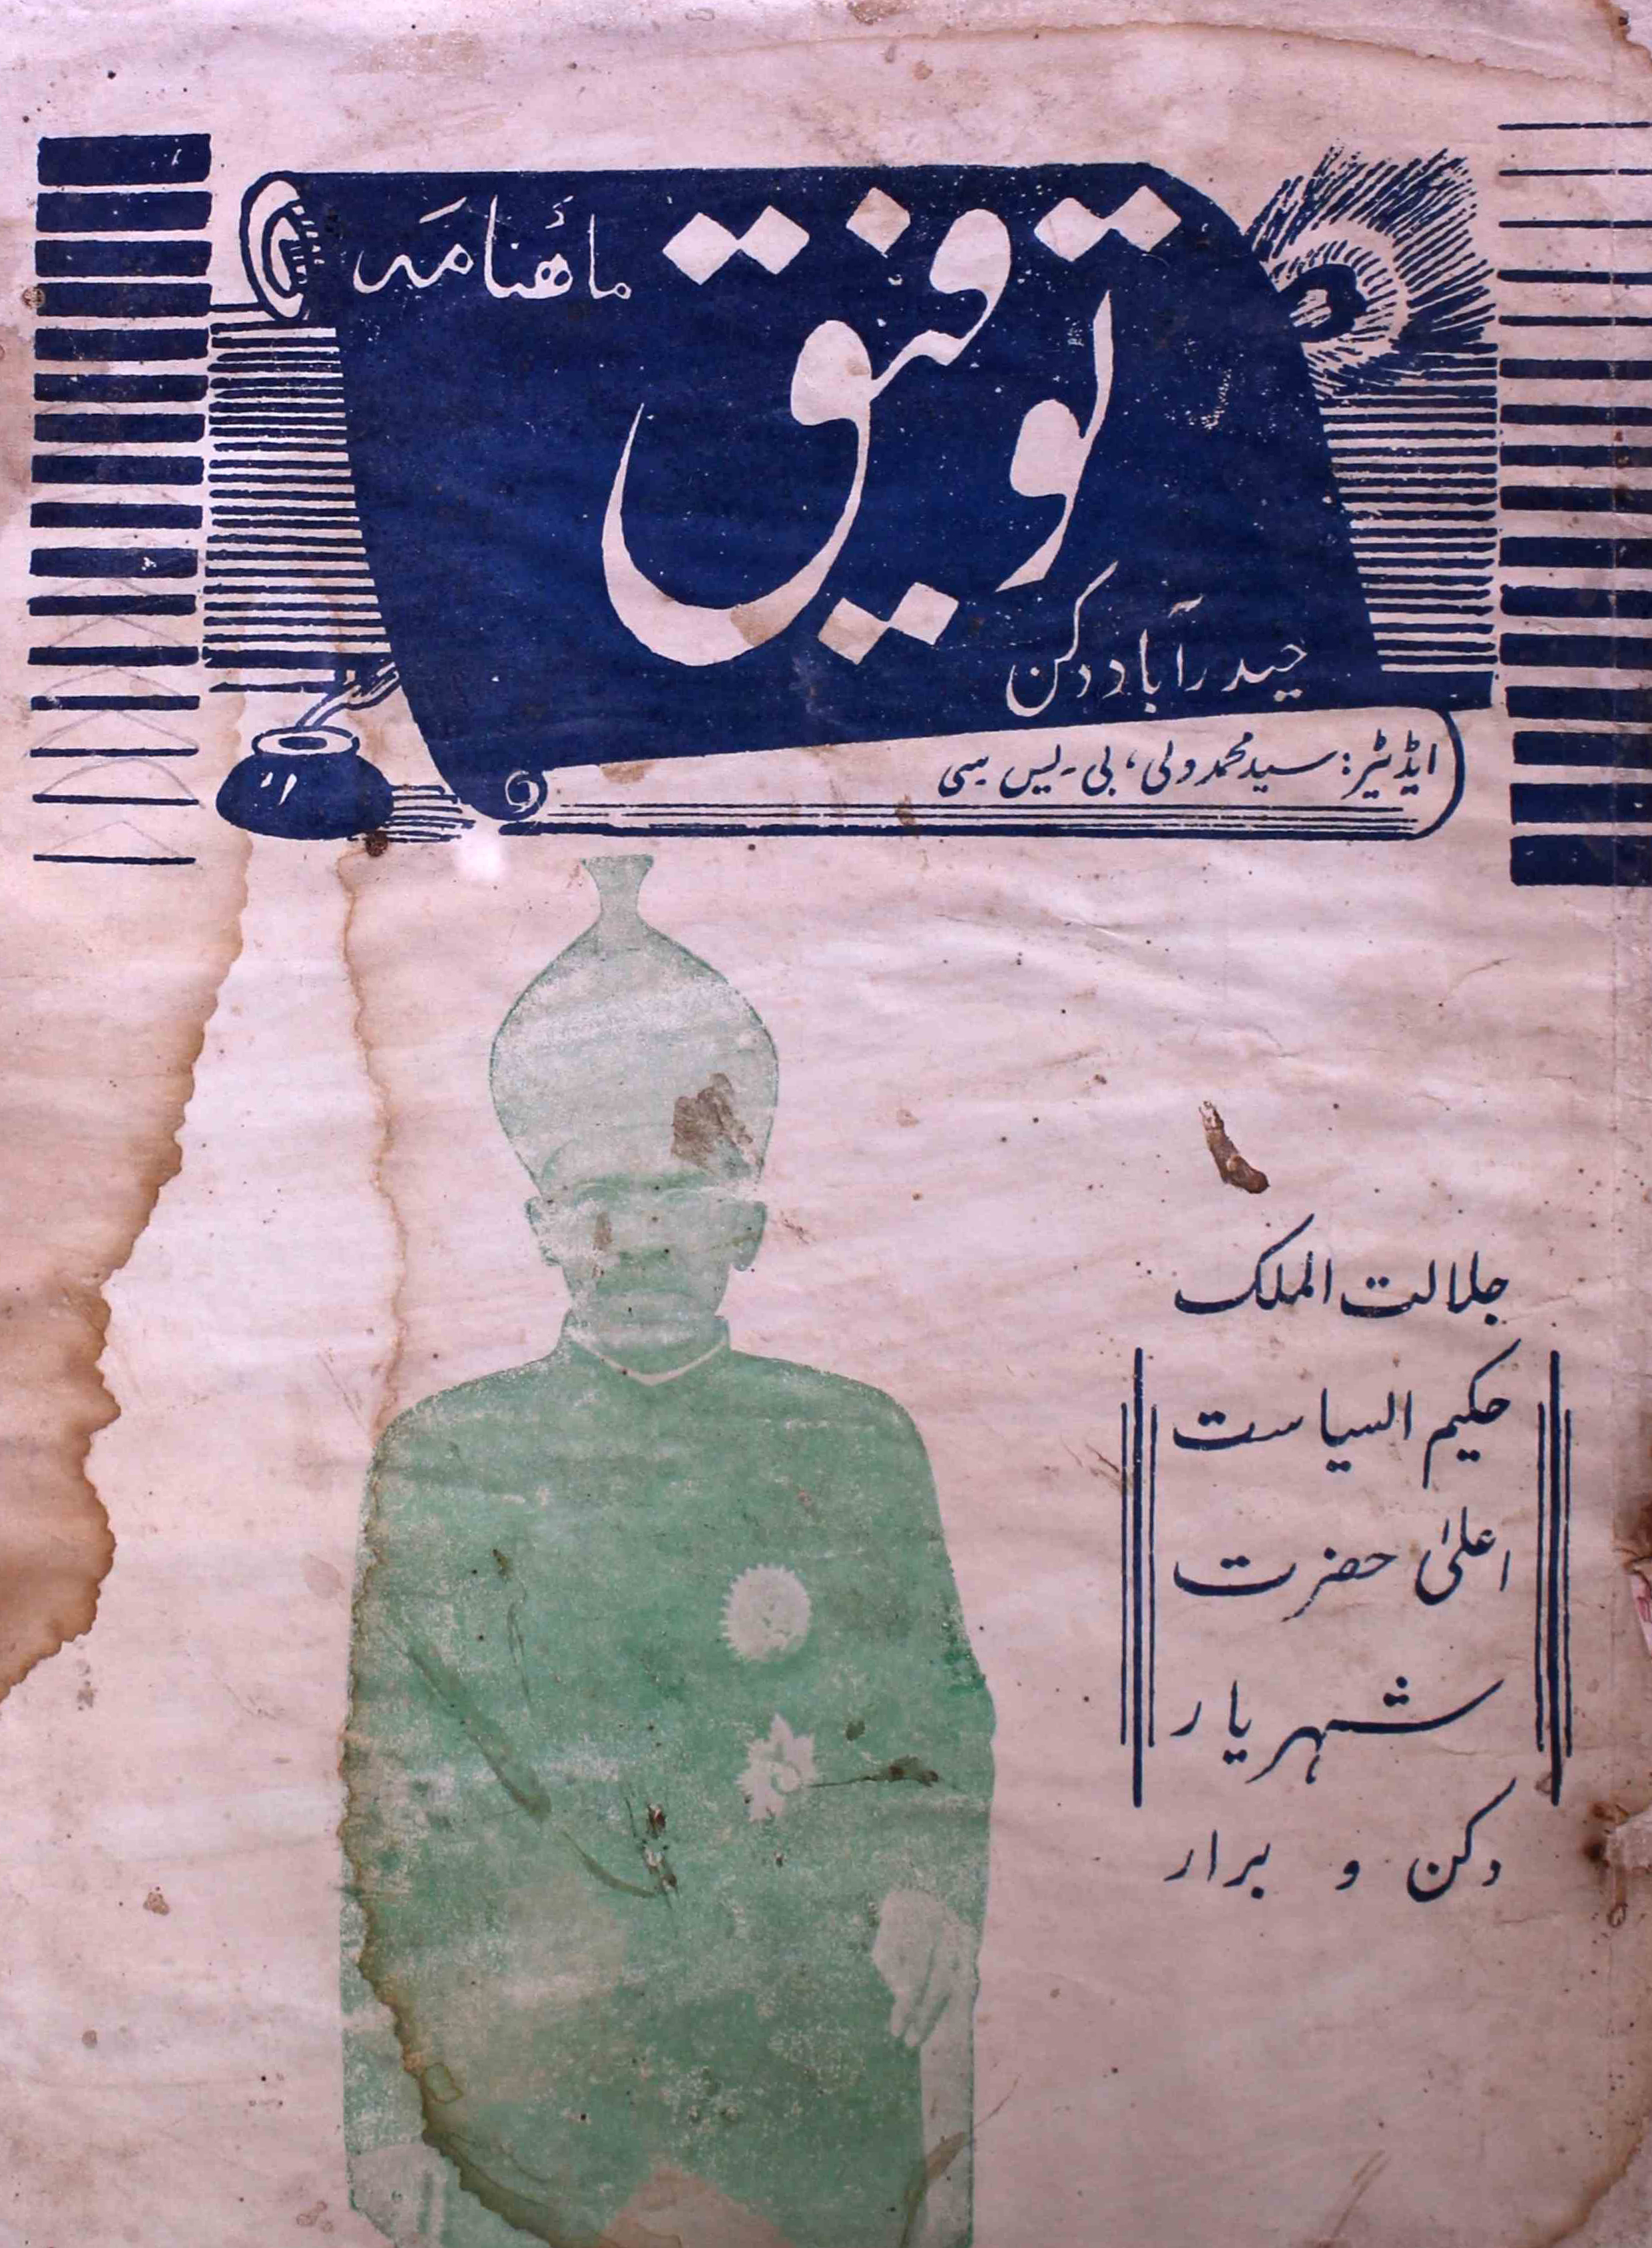 taufeeq-shumaara-number-001-sayyad-mohammad-wali-magazines